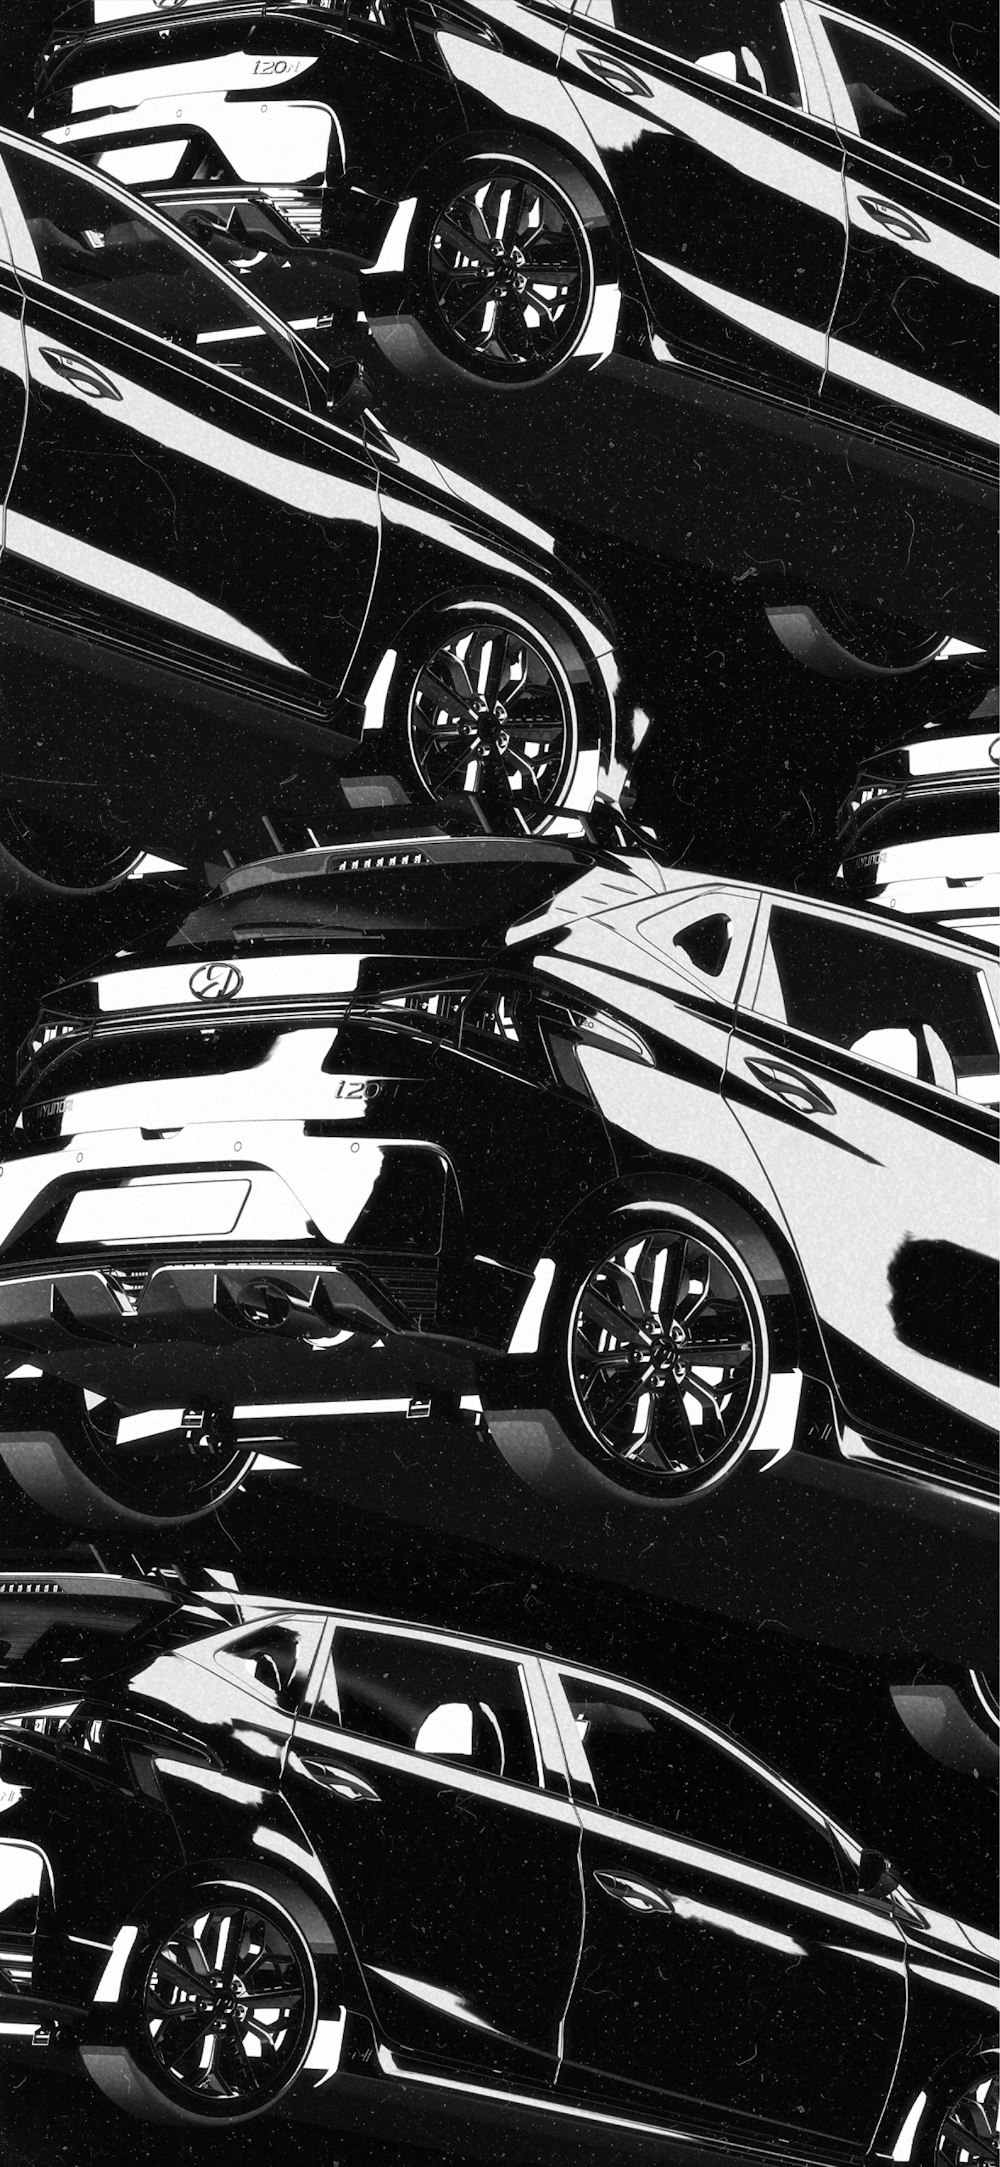 Una foto en blanco y negro de un montón de coches